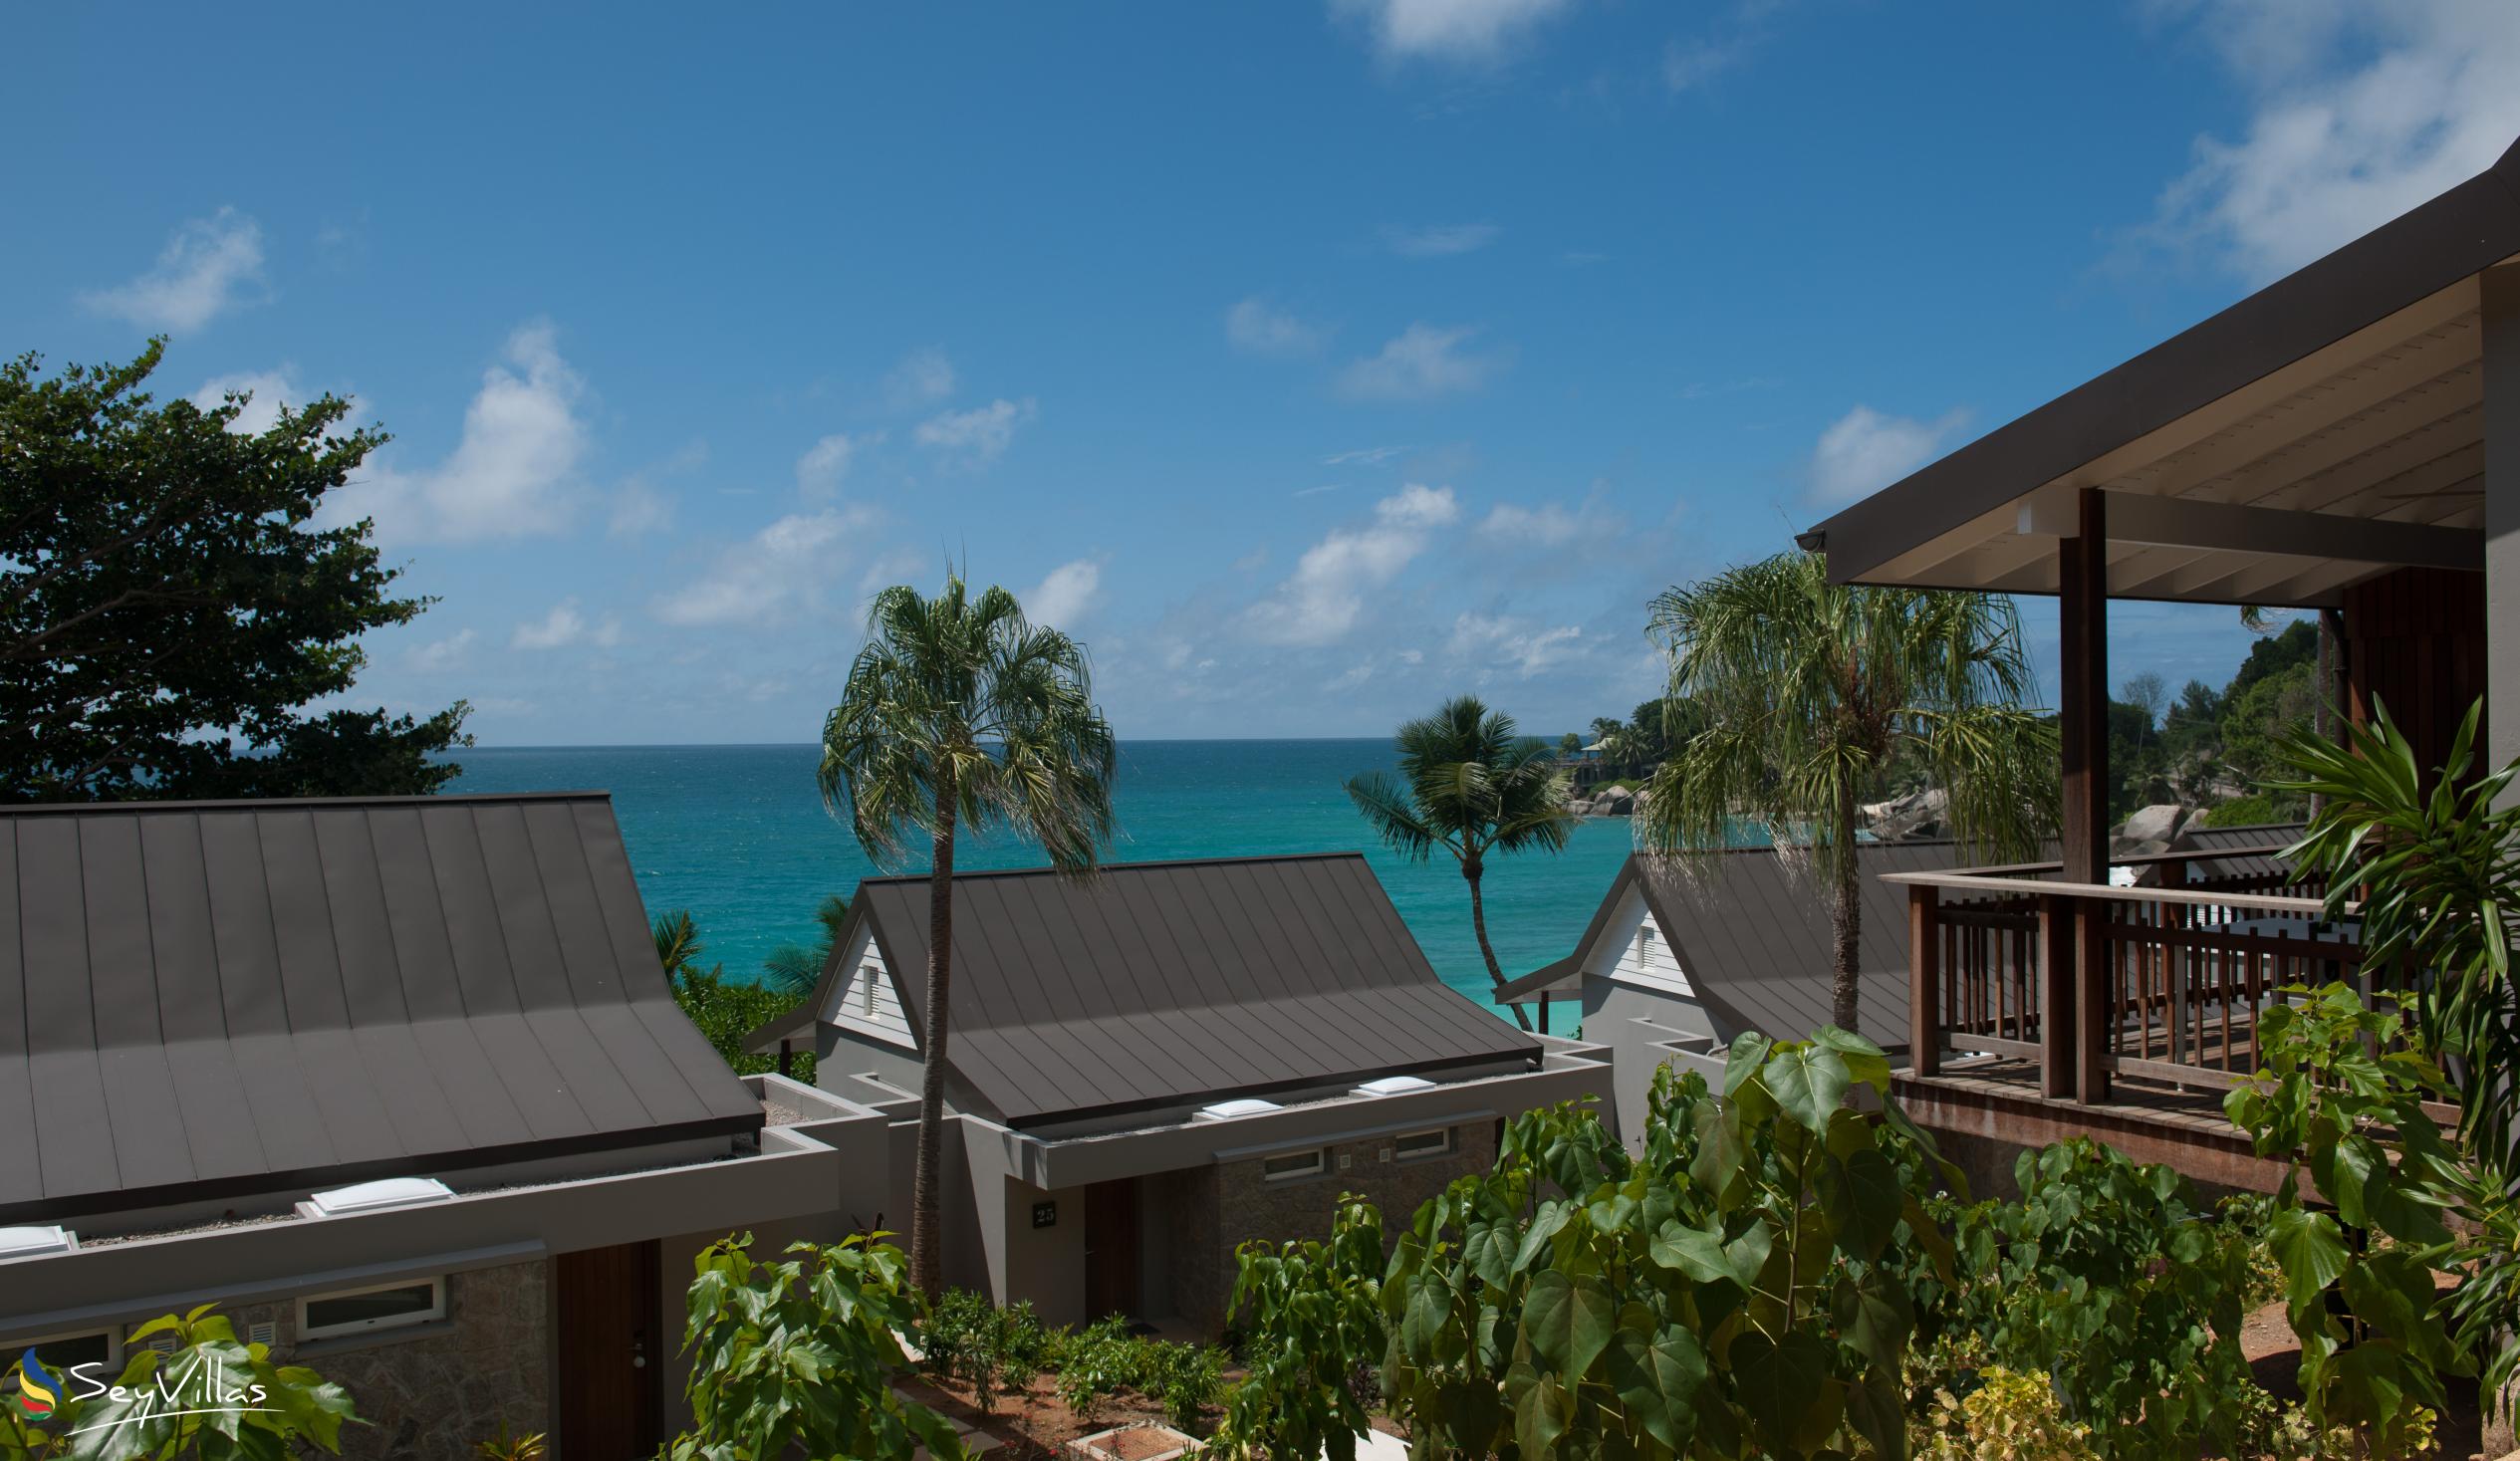 Foto 3: Carana Beach Hotel - Aussenbereich - Mahé (Seychellen)